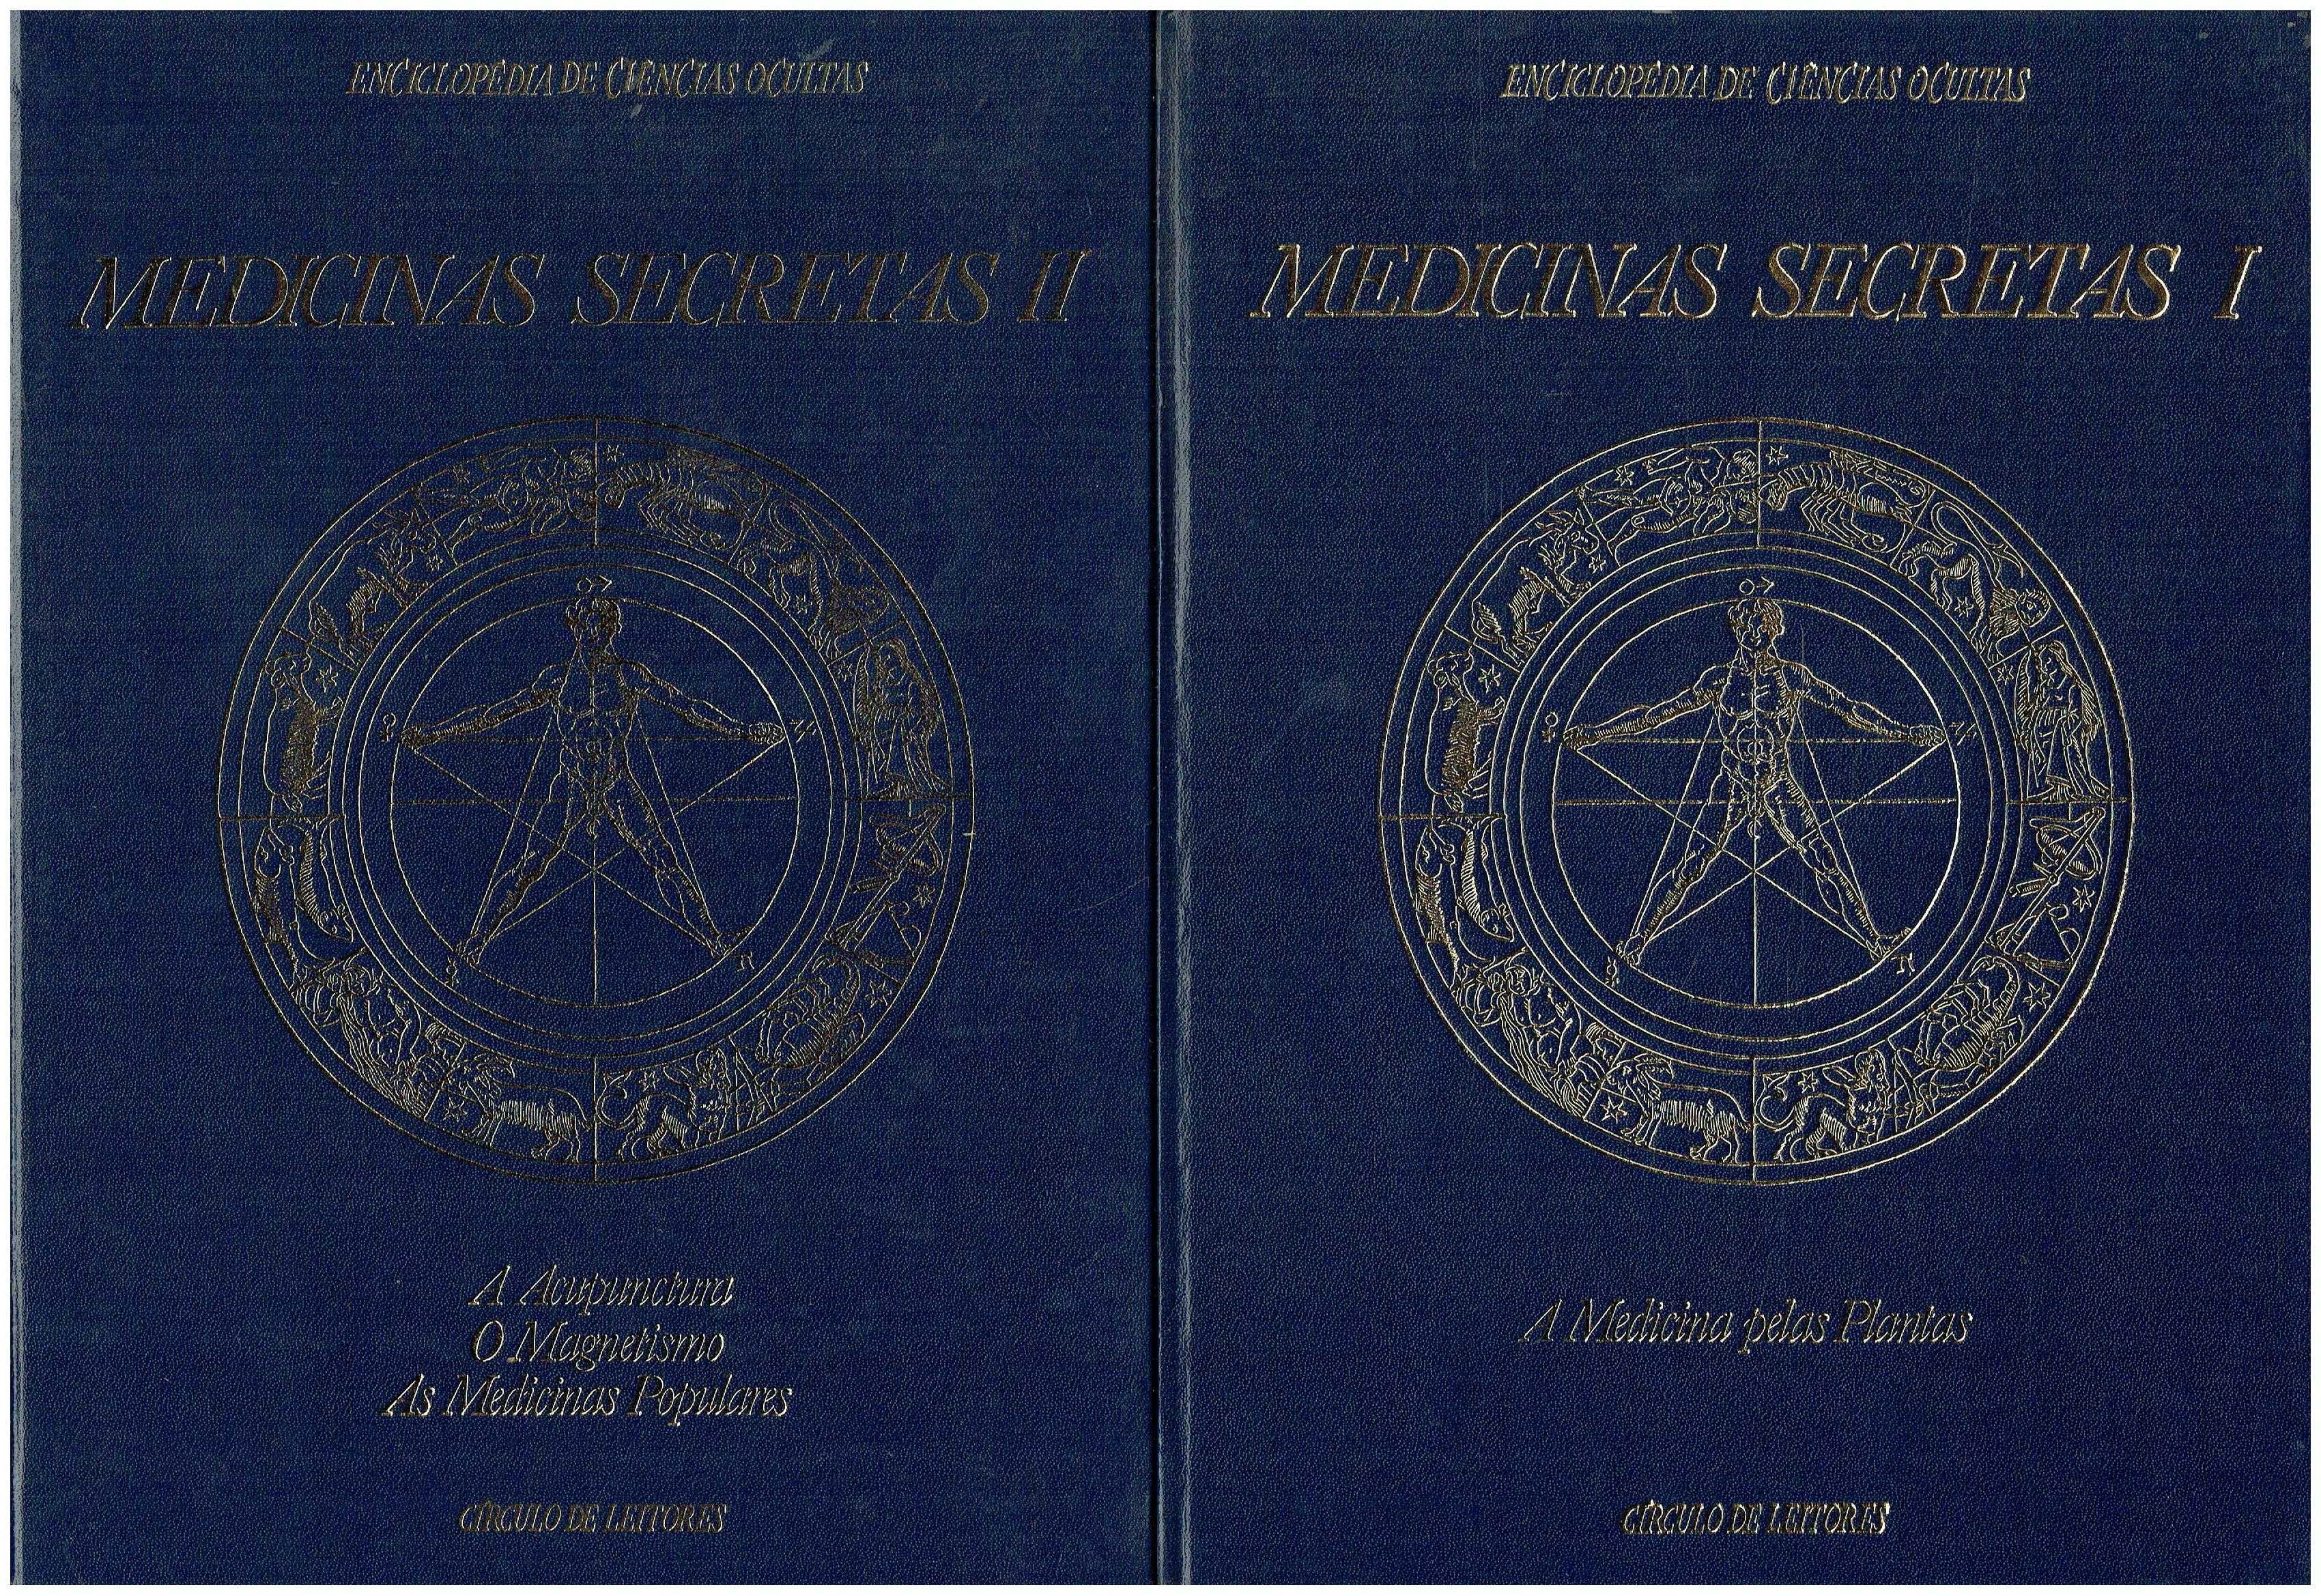 12709

Enciclopédia das Ciências Ocultas - 8 Vols.